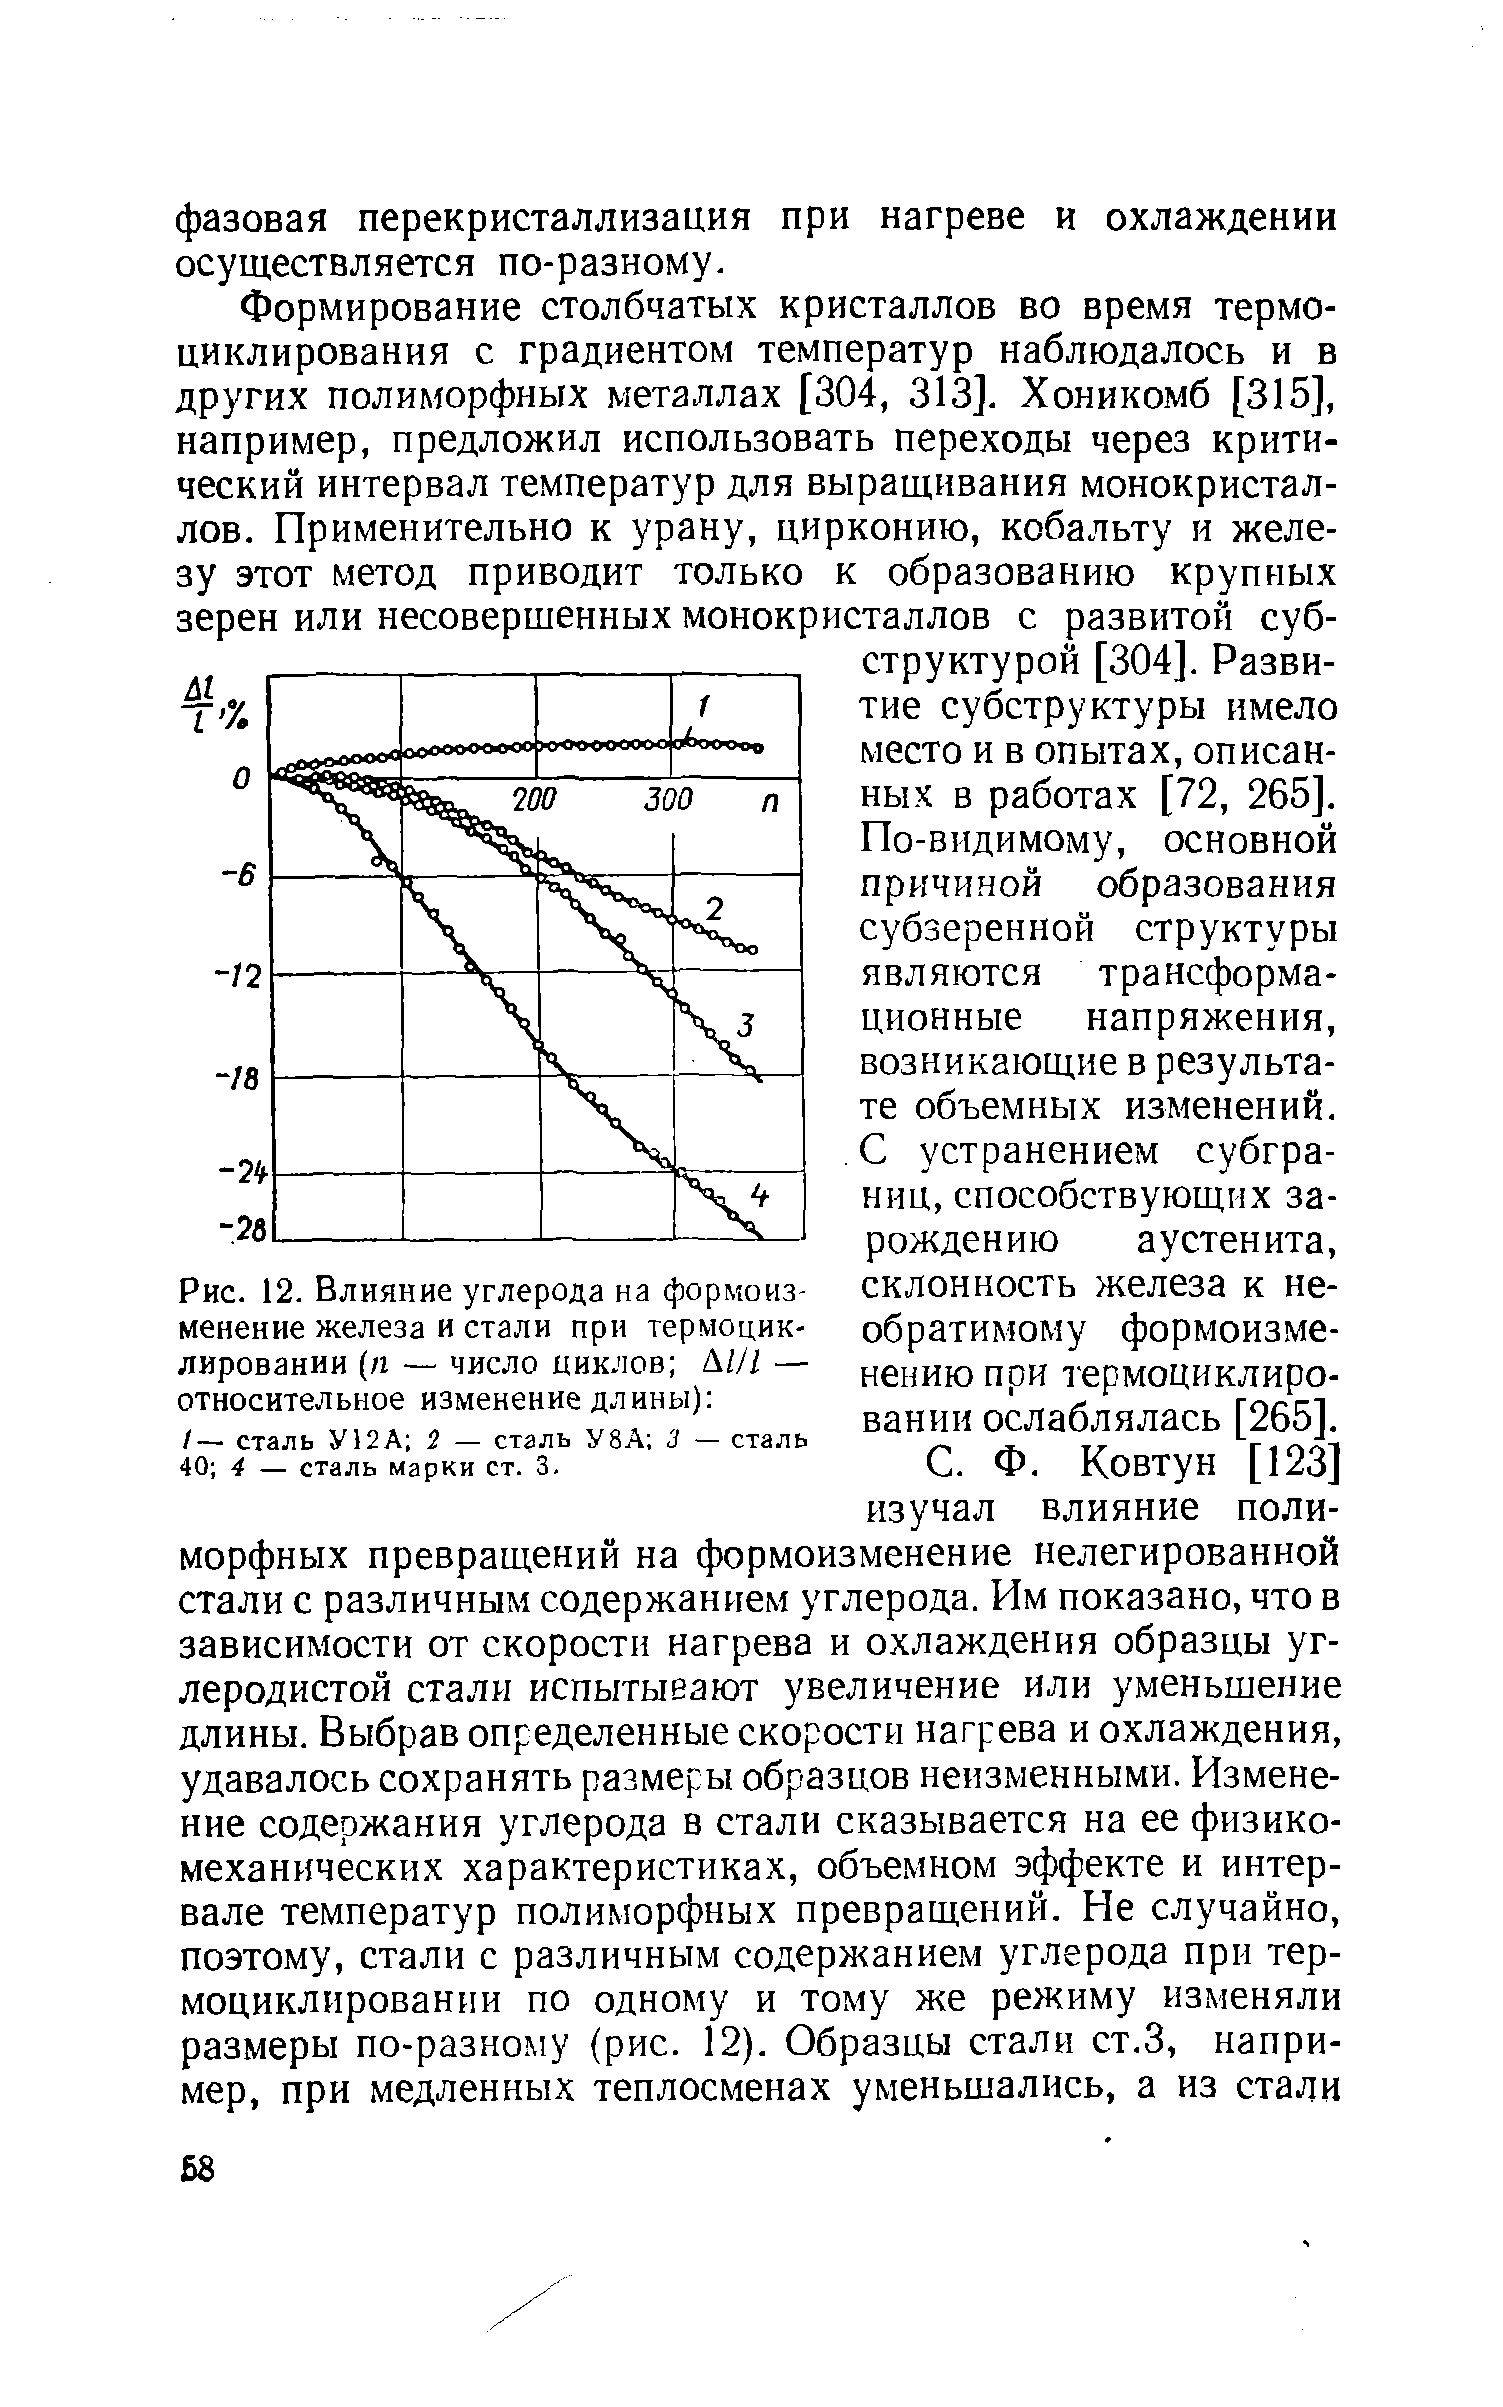 Рис. 12. <a href="/info/116837">Влияние углерода</a> на формоизменение железа и стали при термоцик-лировании (п — число циклов ЫН — относительное изменение длины) 
